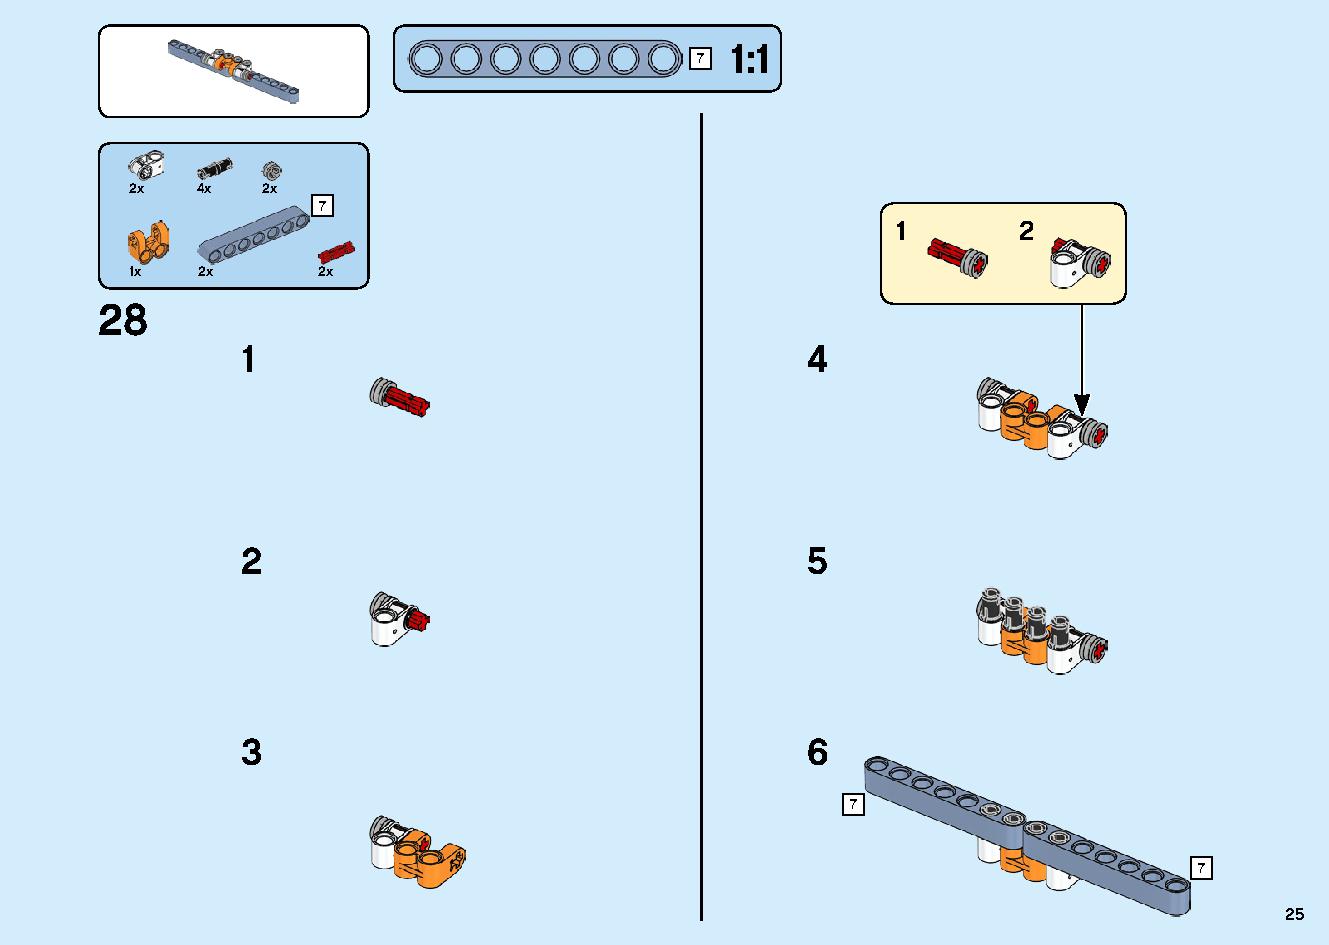 陸上戦艦バウンティ号 70677 レゴの商品情報 レゴの説明書・組立方法 25 page